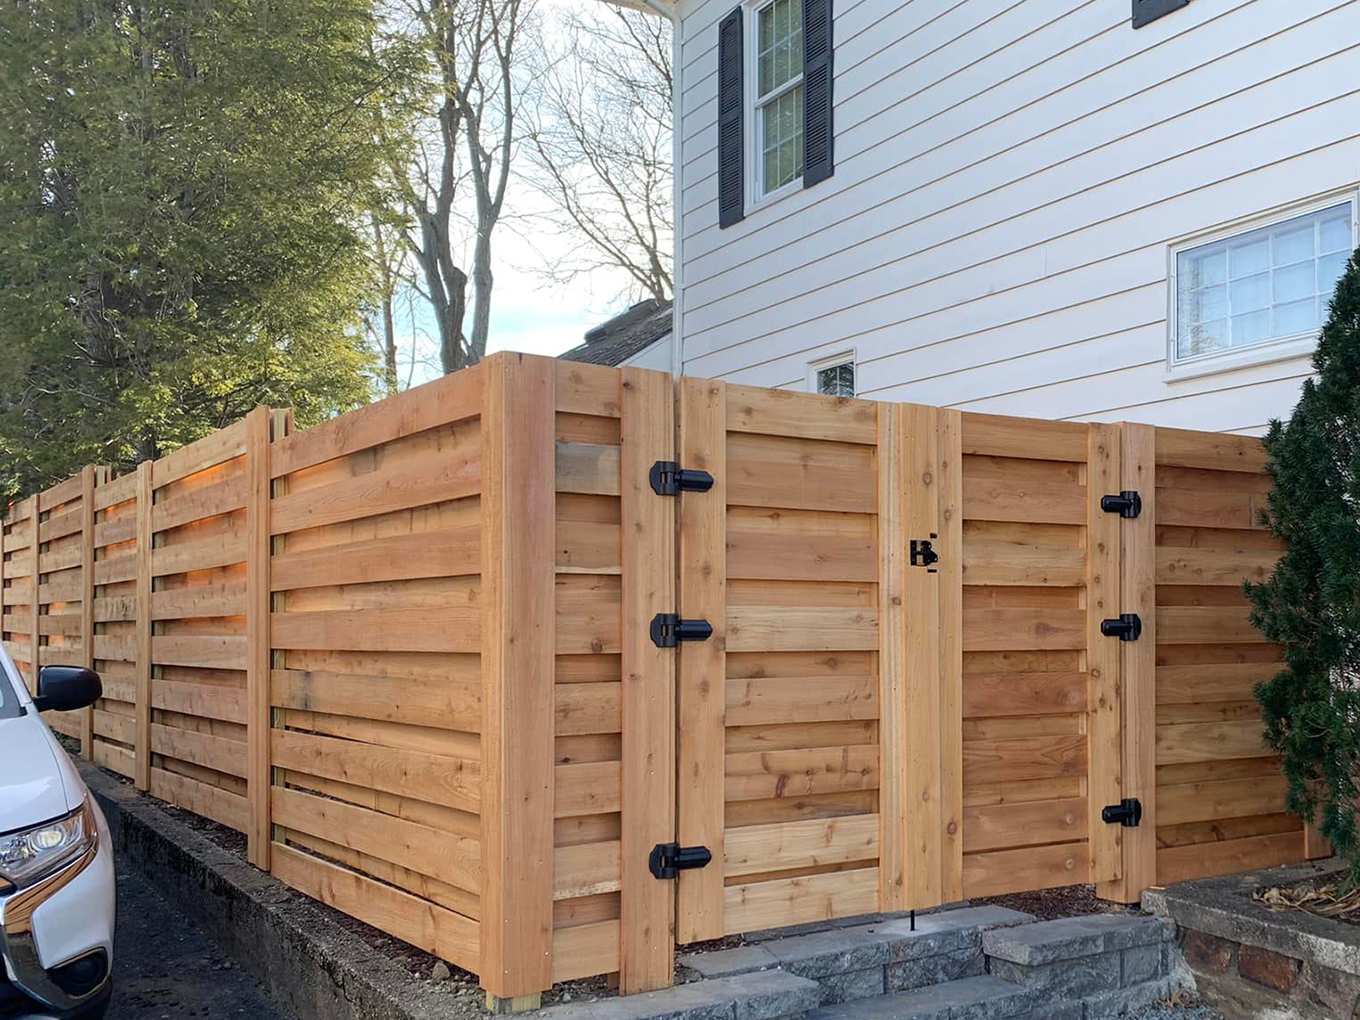 Lowell MA horizontal style wood fence